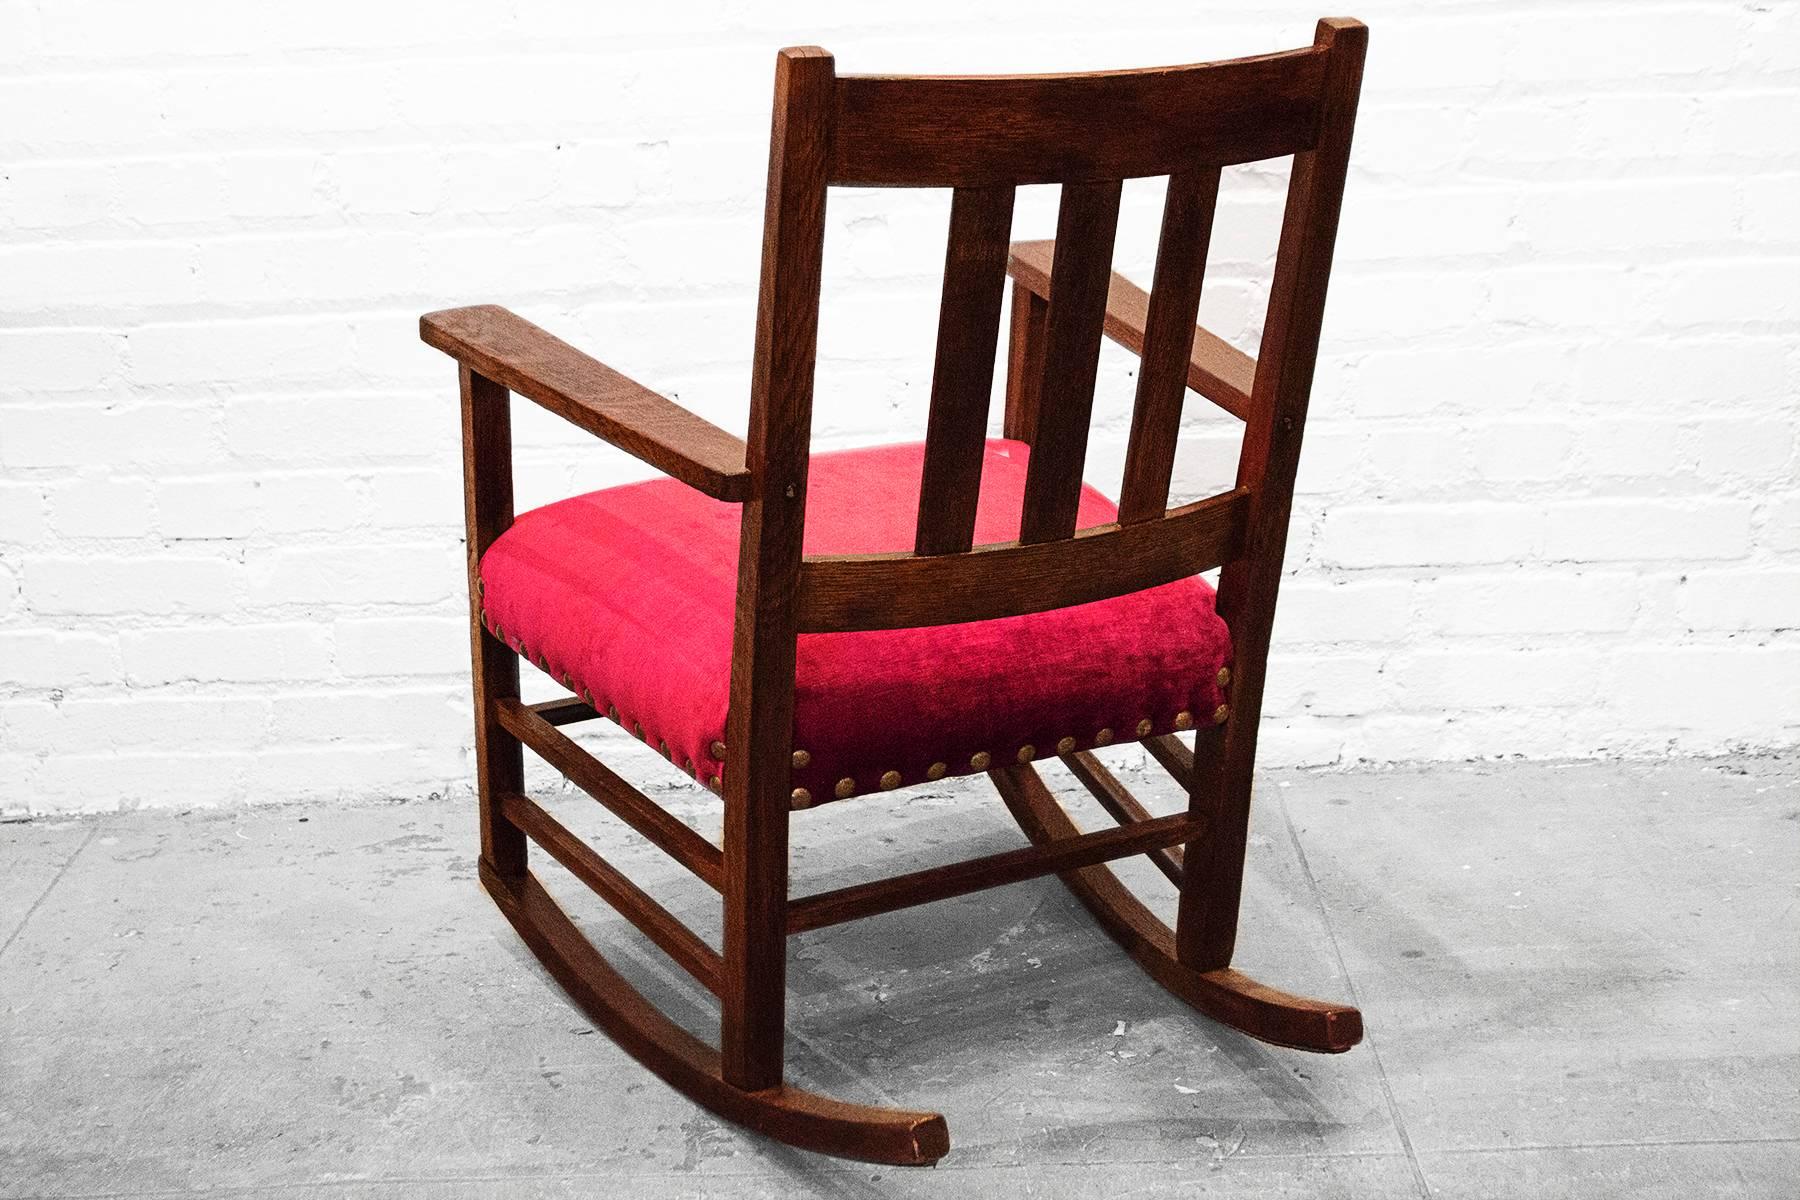 period craftsman chair